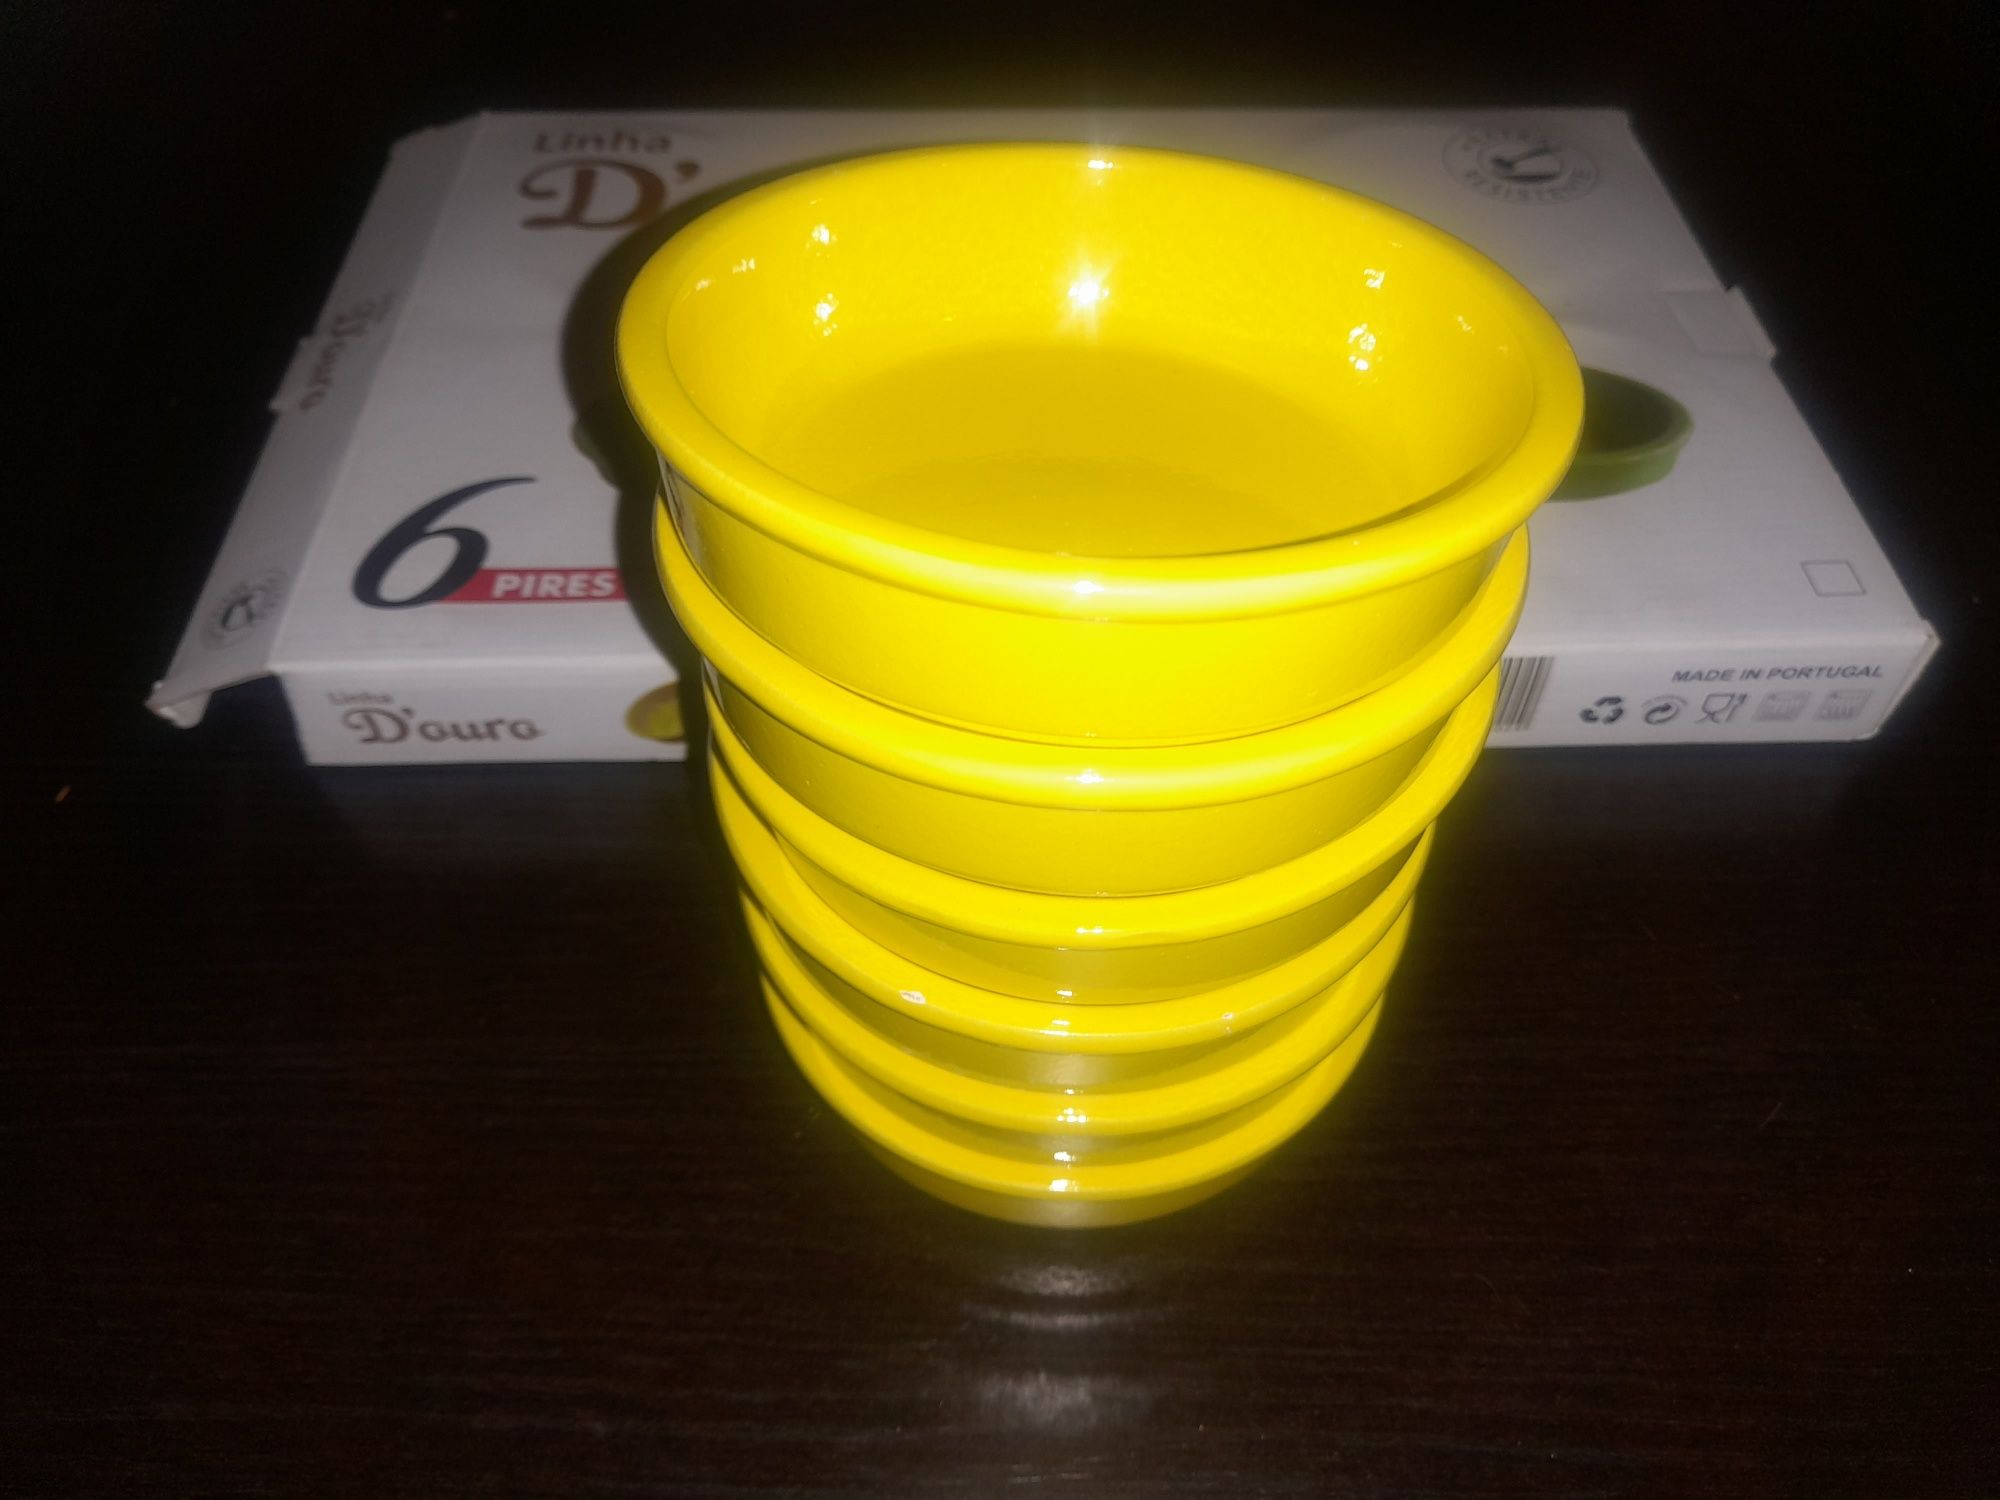 Caixa com 6 lindos pires (tigelas) de cerâmica, cor verde ou amarela